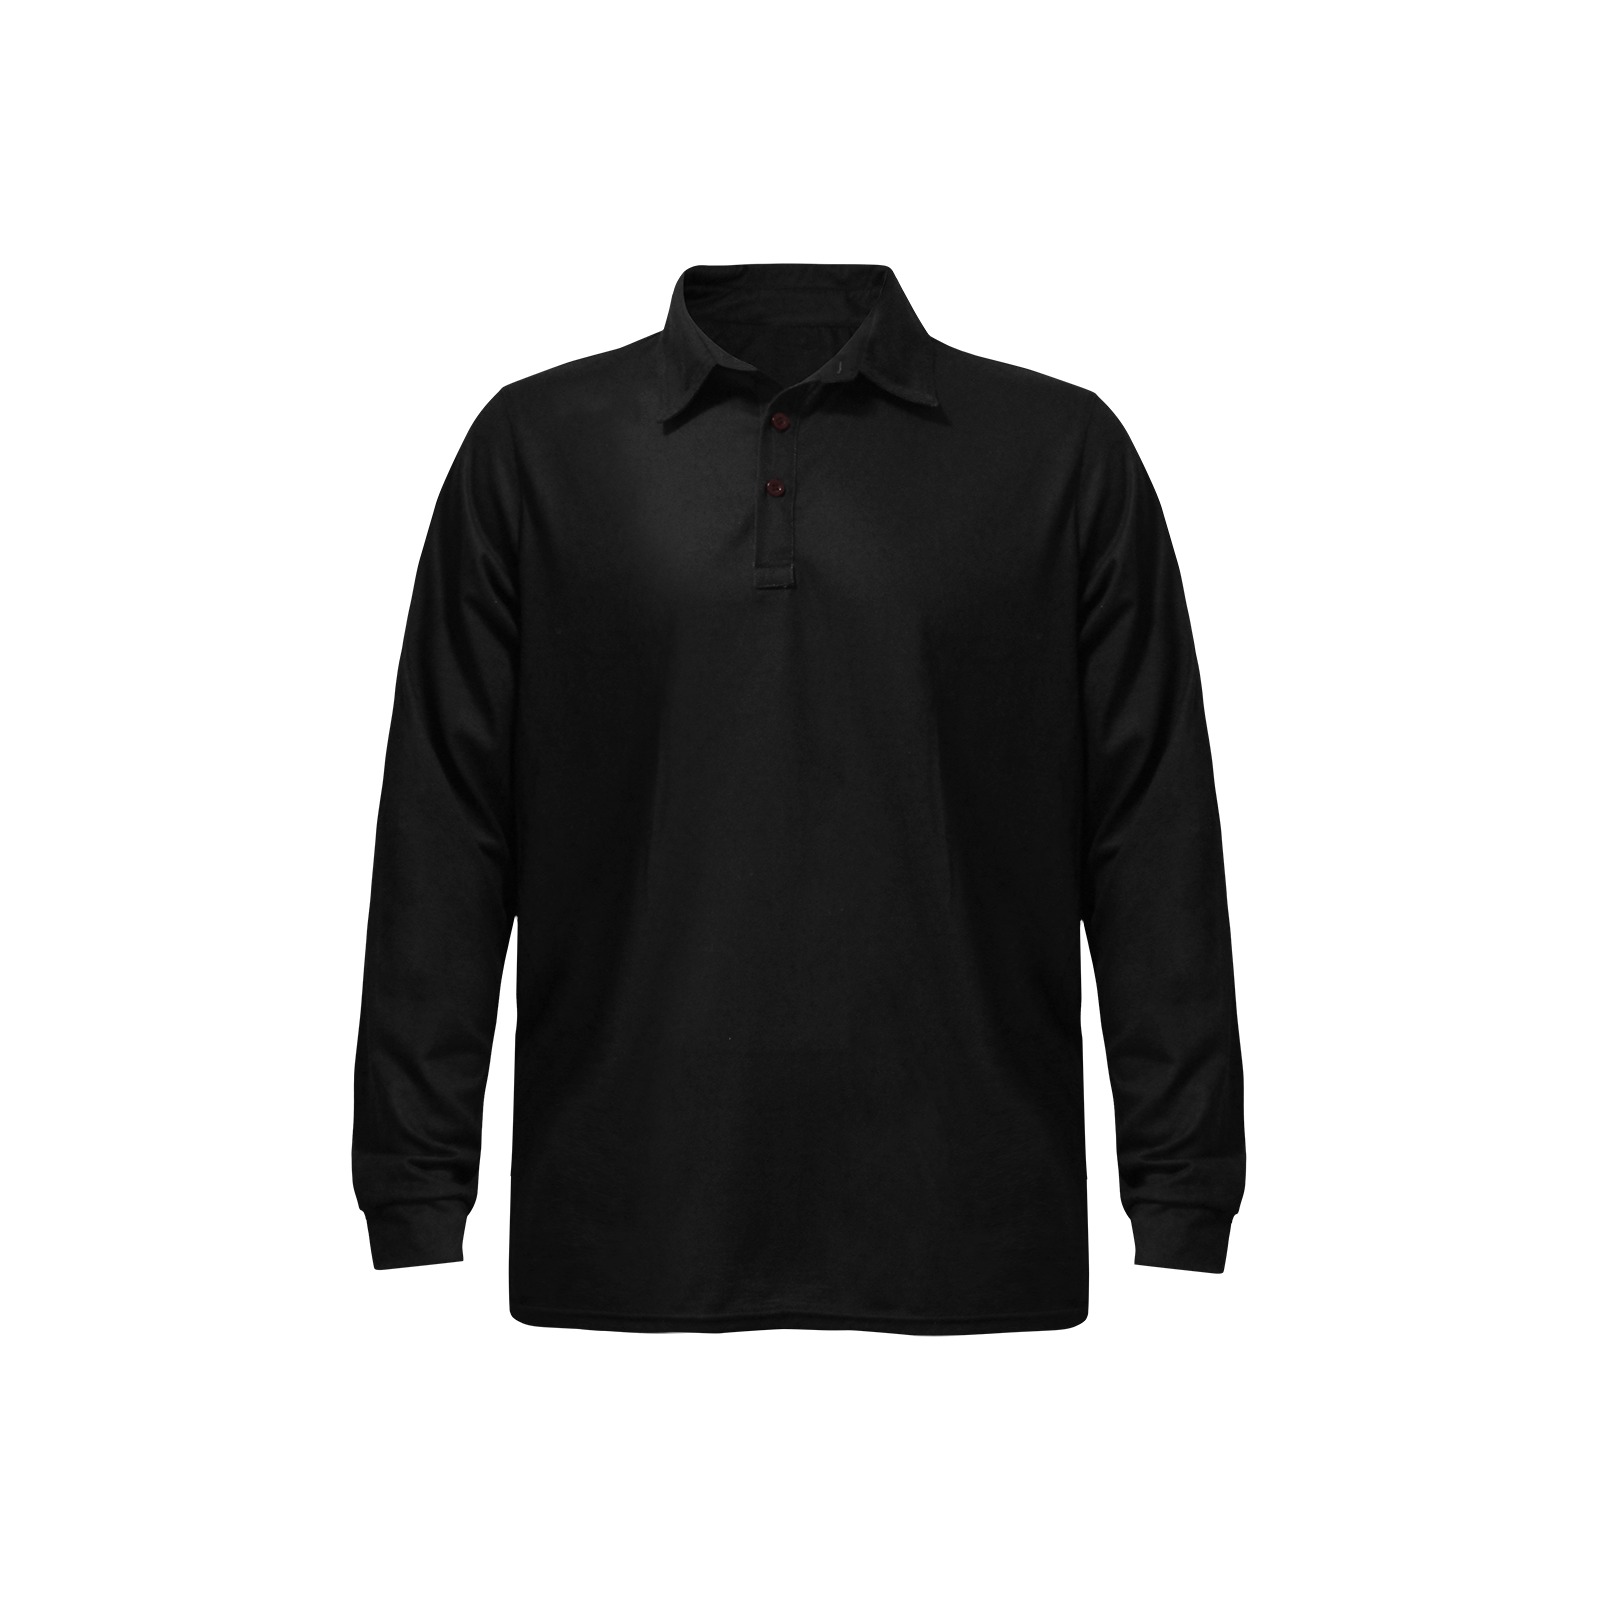 Solid Black Long Sleeve Polo Men's Long Sleeve Polo Shirt (Model T73)